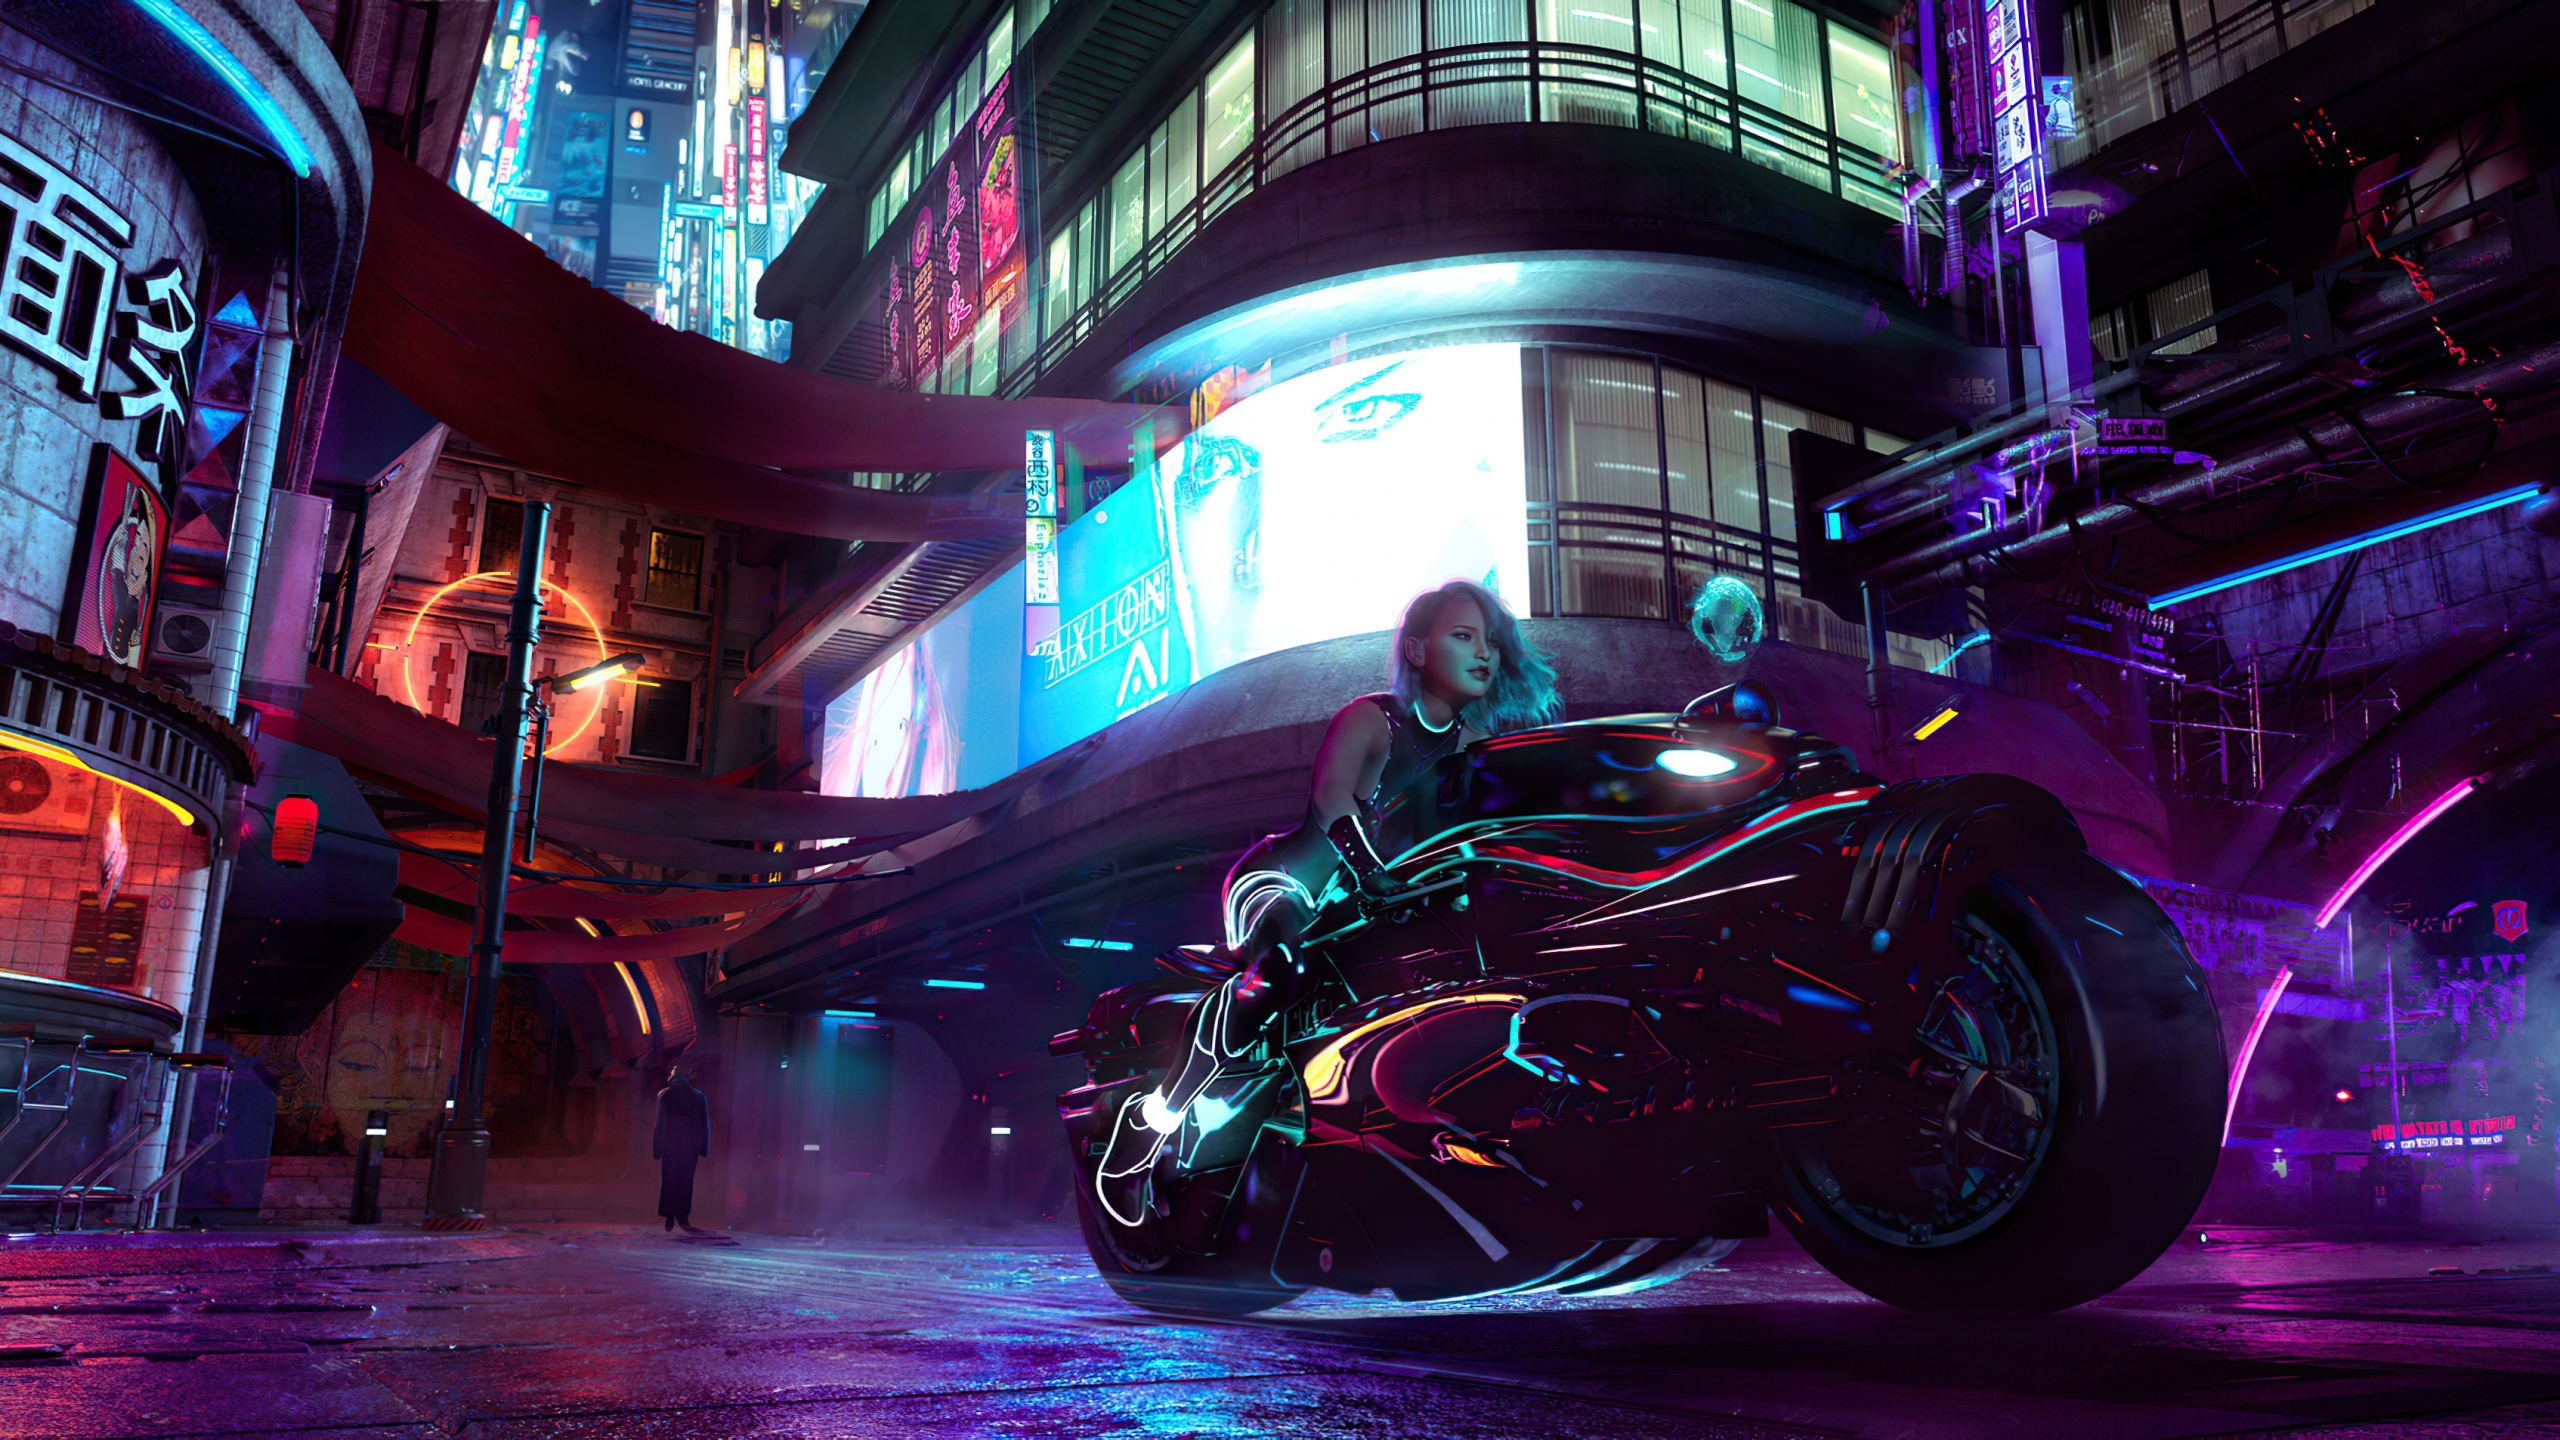 Chica en moto estilo cyberpunk Fondo de pantalla 4k Ultra HD ID:5590